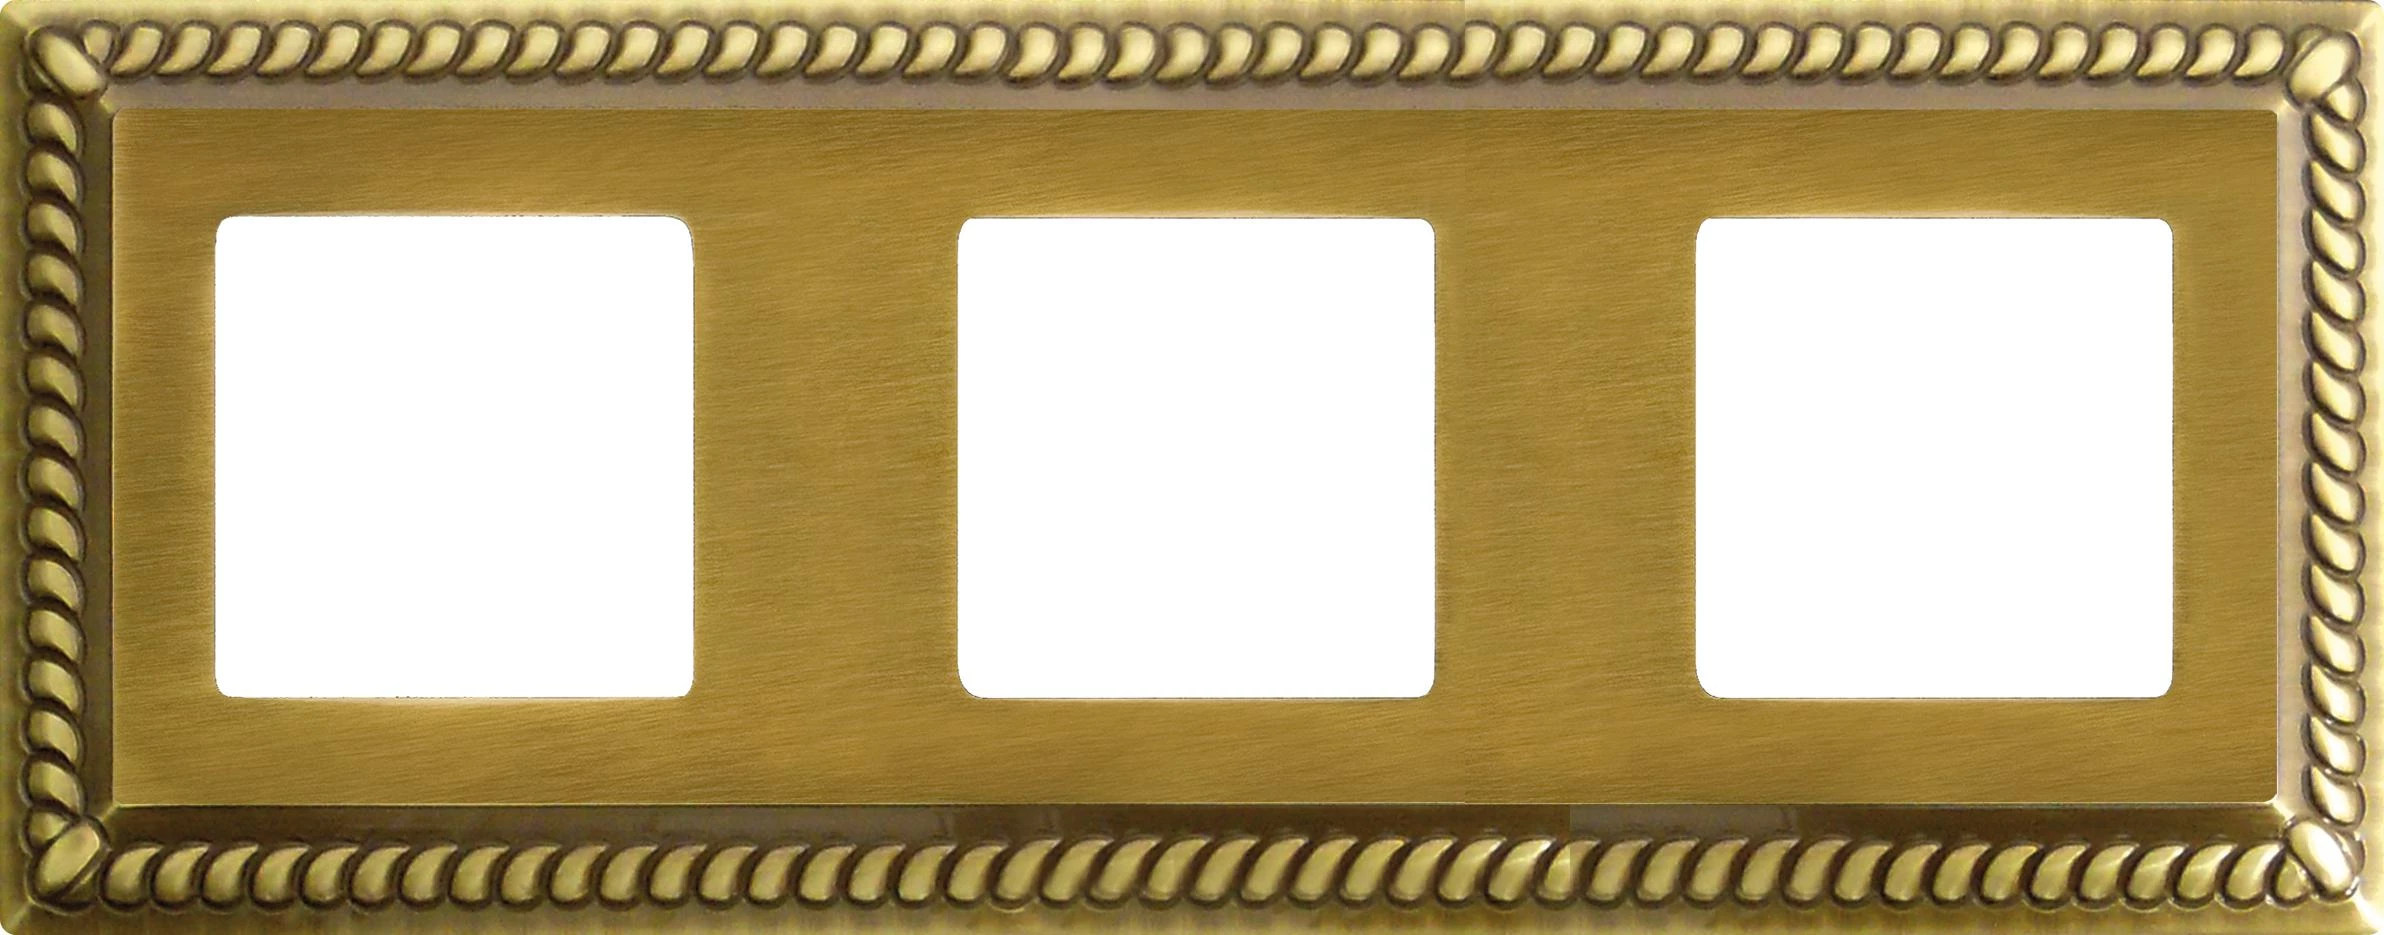  артикул FD01233PB название Рамка 3-ая (тройная), цвет Светлая бронза, Sevilla, Fede